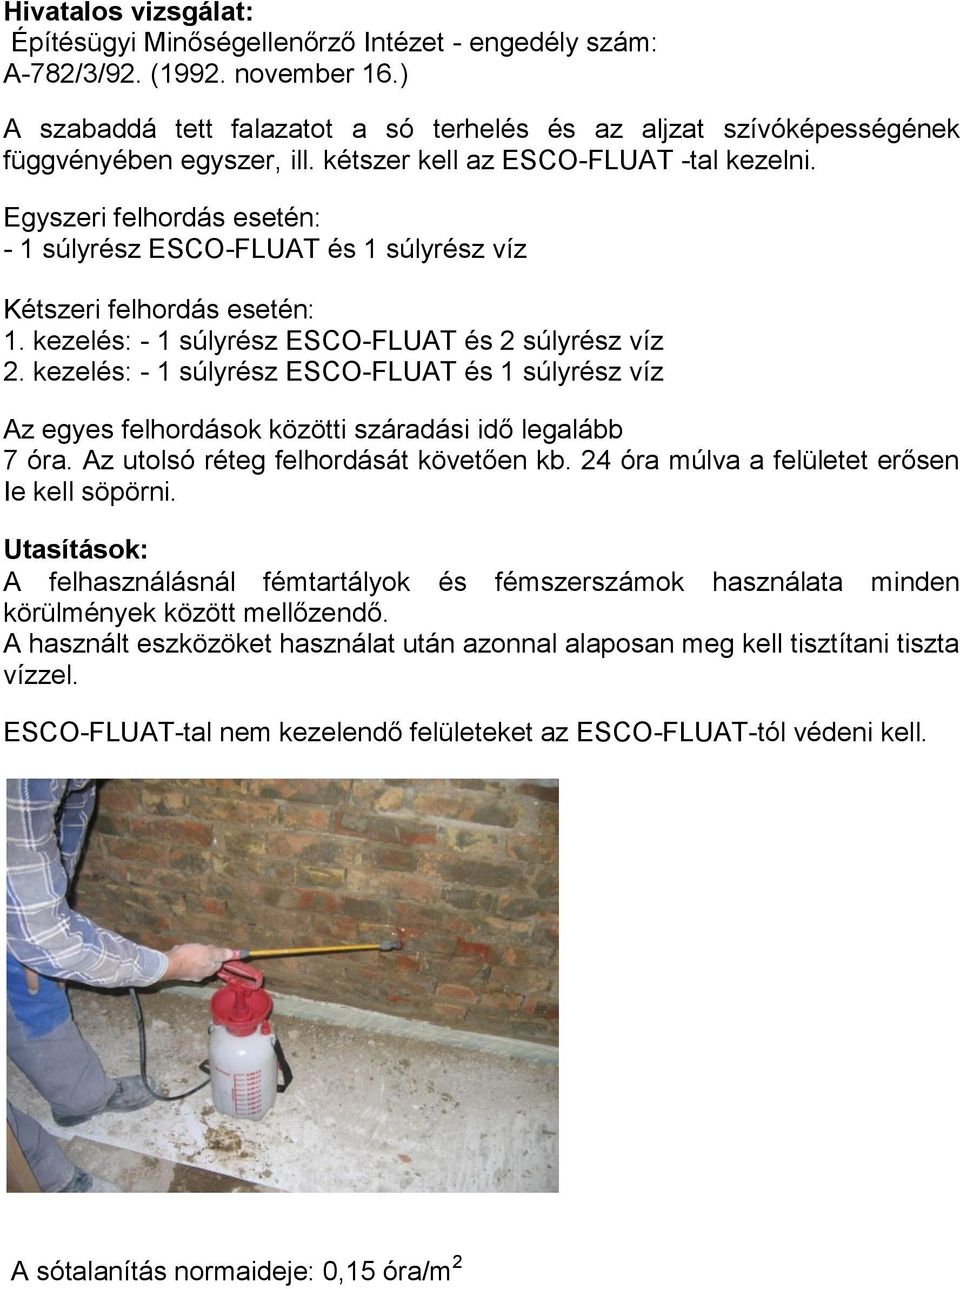 Egyszeri felhordás esetén: - 1 súlyrész ESCO-FLUAT és 1 súlyrész víz Kétszeri felhordás esetén: 1. kezelés: - 1 súlyrész ESCO-FLUAT és 2 súlyrész víz 2.